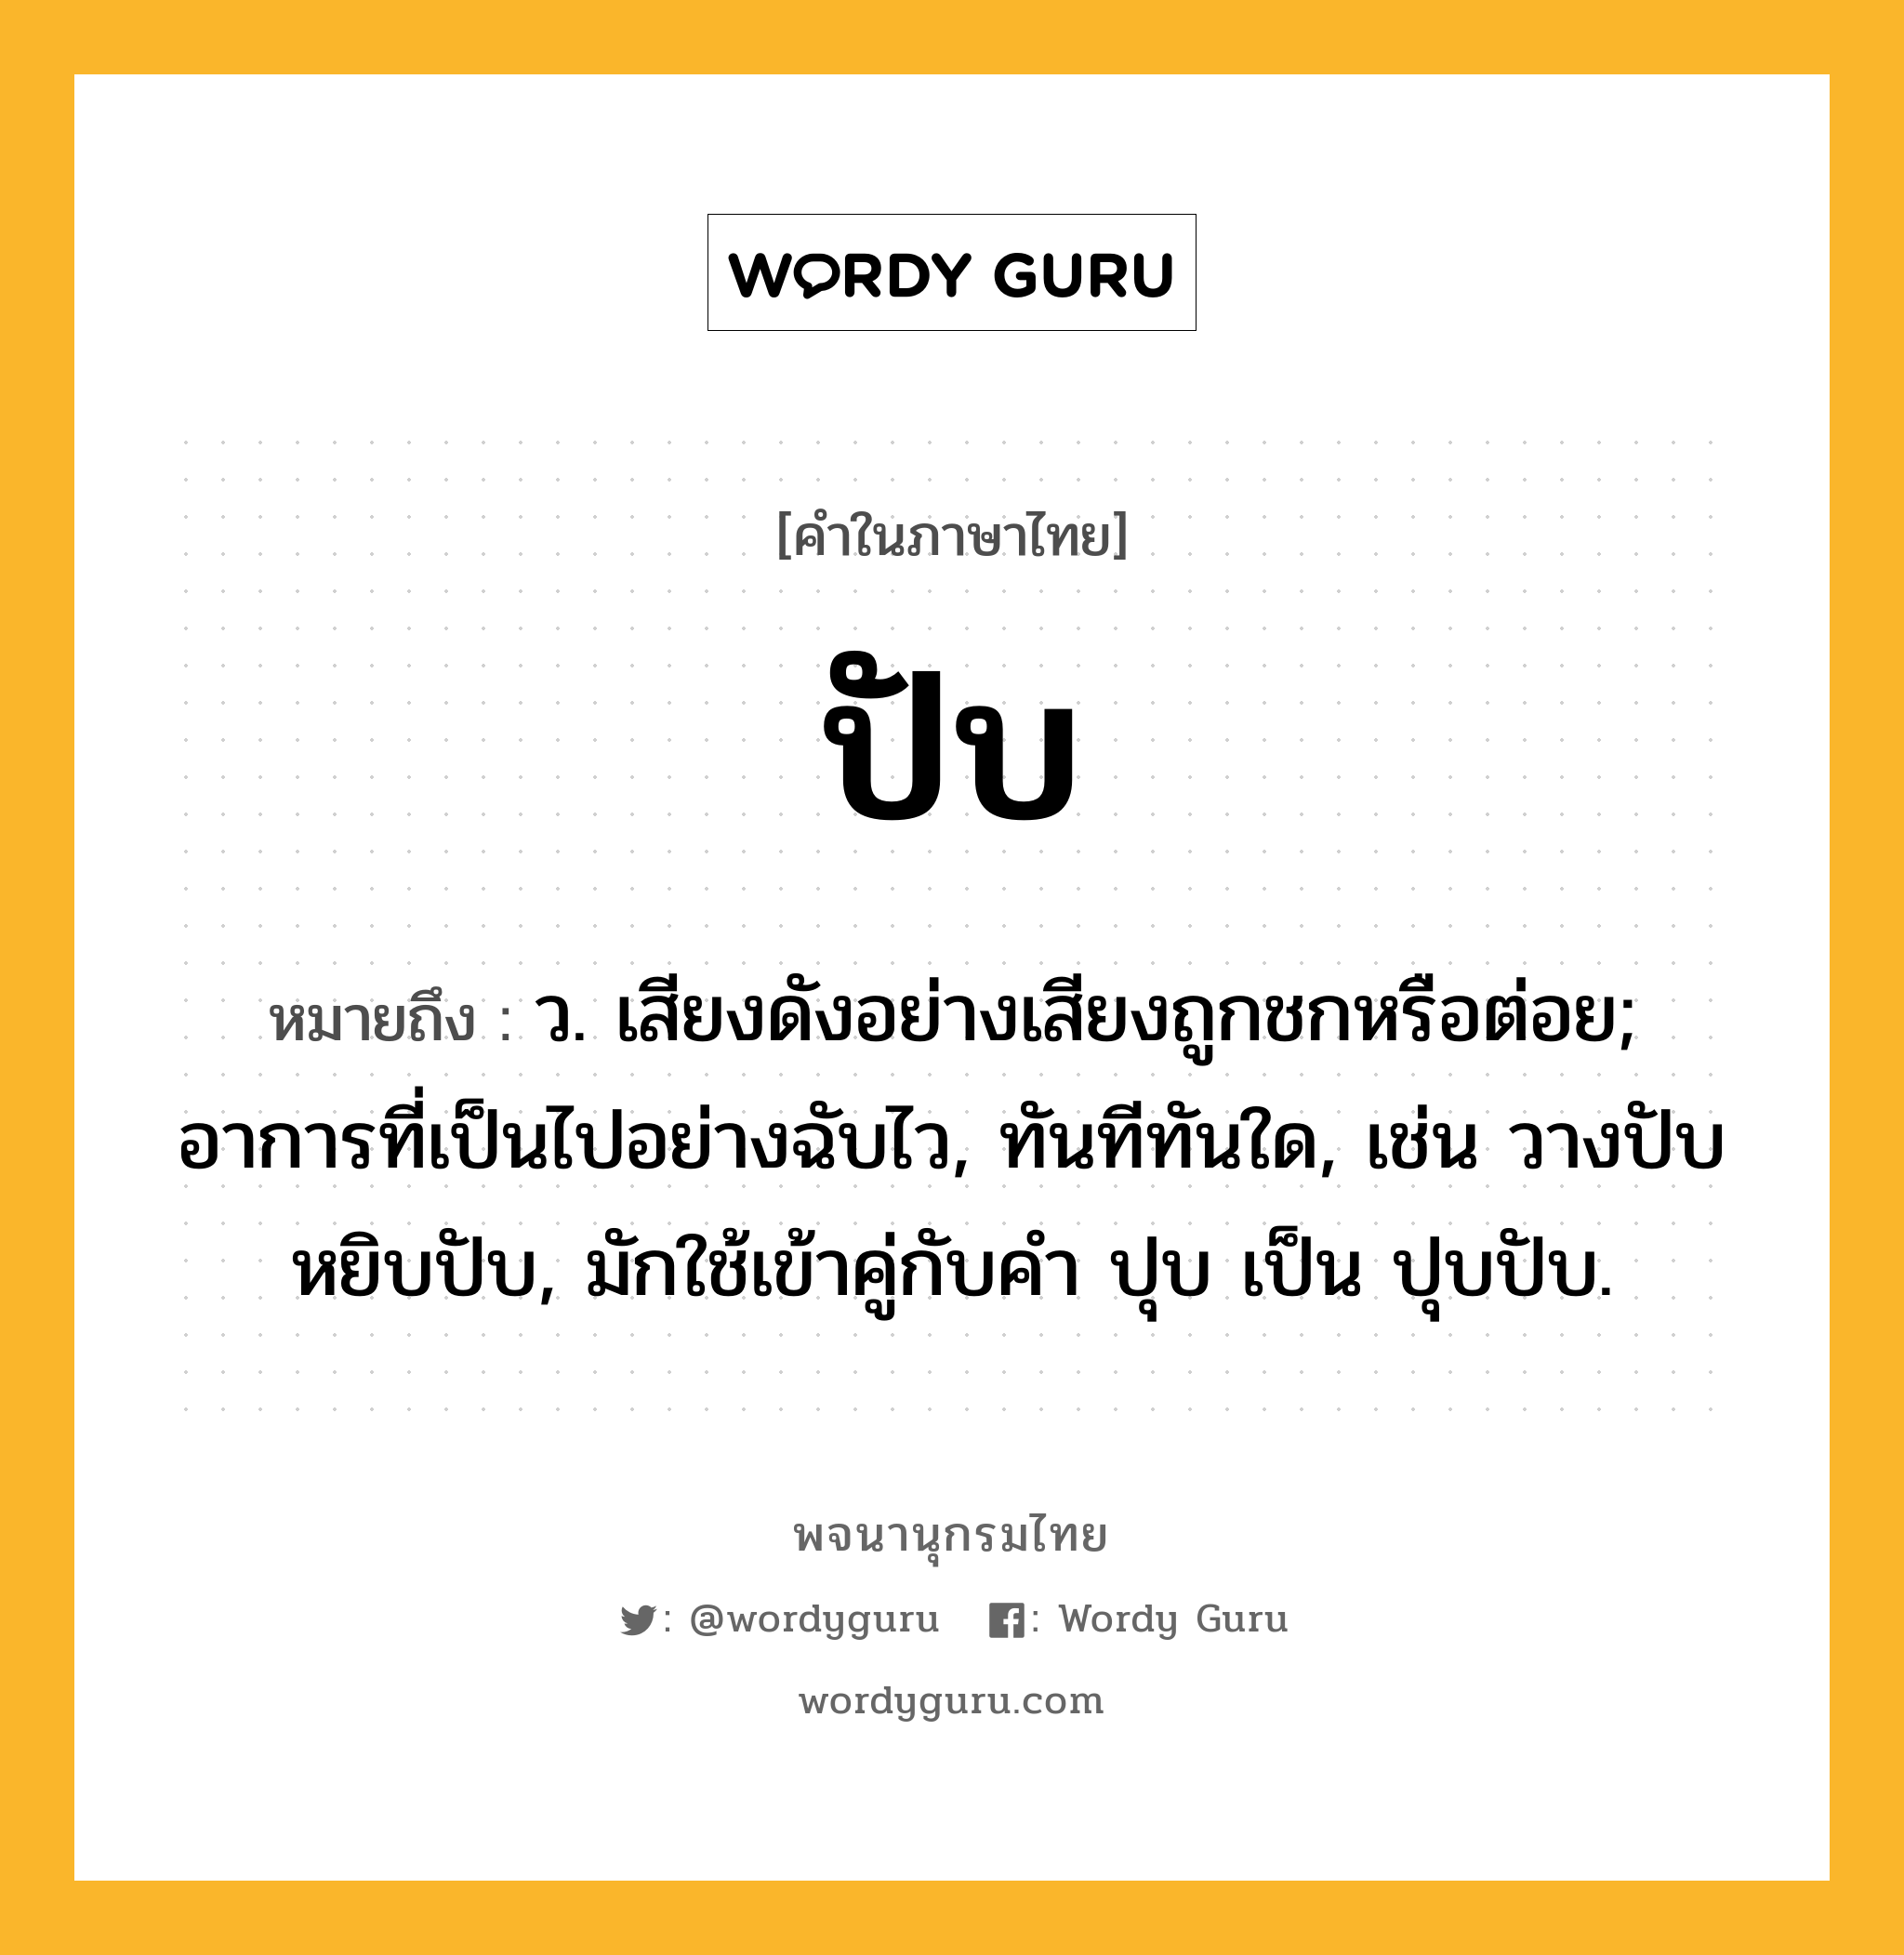 ปับ หมายถึงอะไร?, คำในภาษาไทย ปับ หมายถึง ว. เสียงดังอย่างเสียงถูกชกหรือต่อย; อาการที่เป็นไปอย่างฉับไว, ทันทีทันใด, เช่น วางปับ หยิบปับ, มักใช้เข้าคู่กับคำ ปุบ เป็น ปุบปับ.